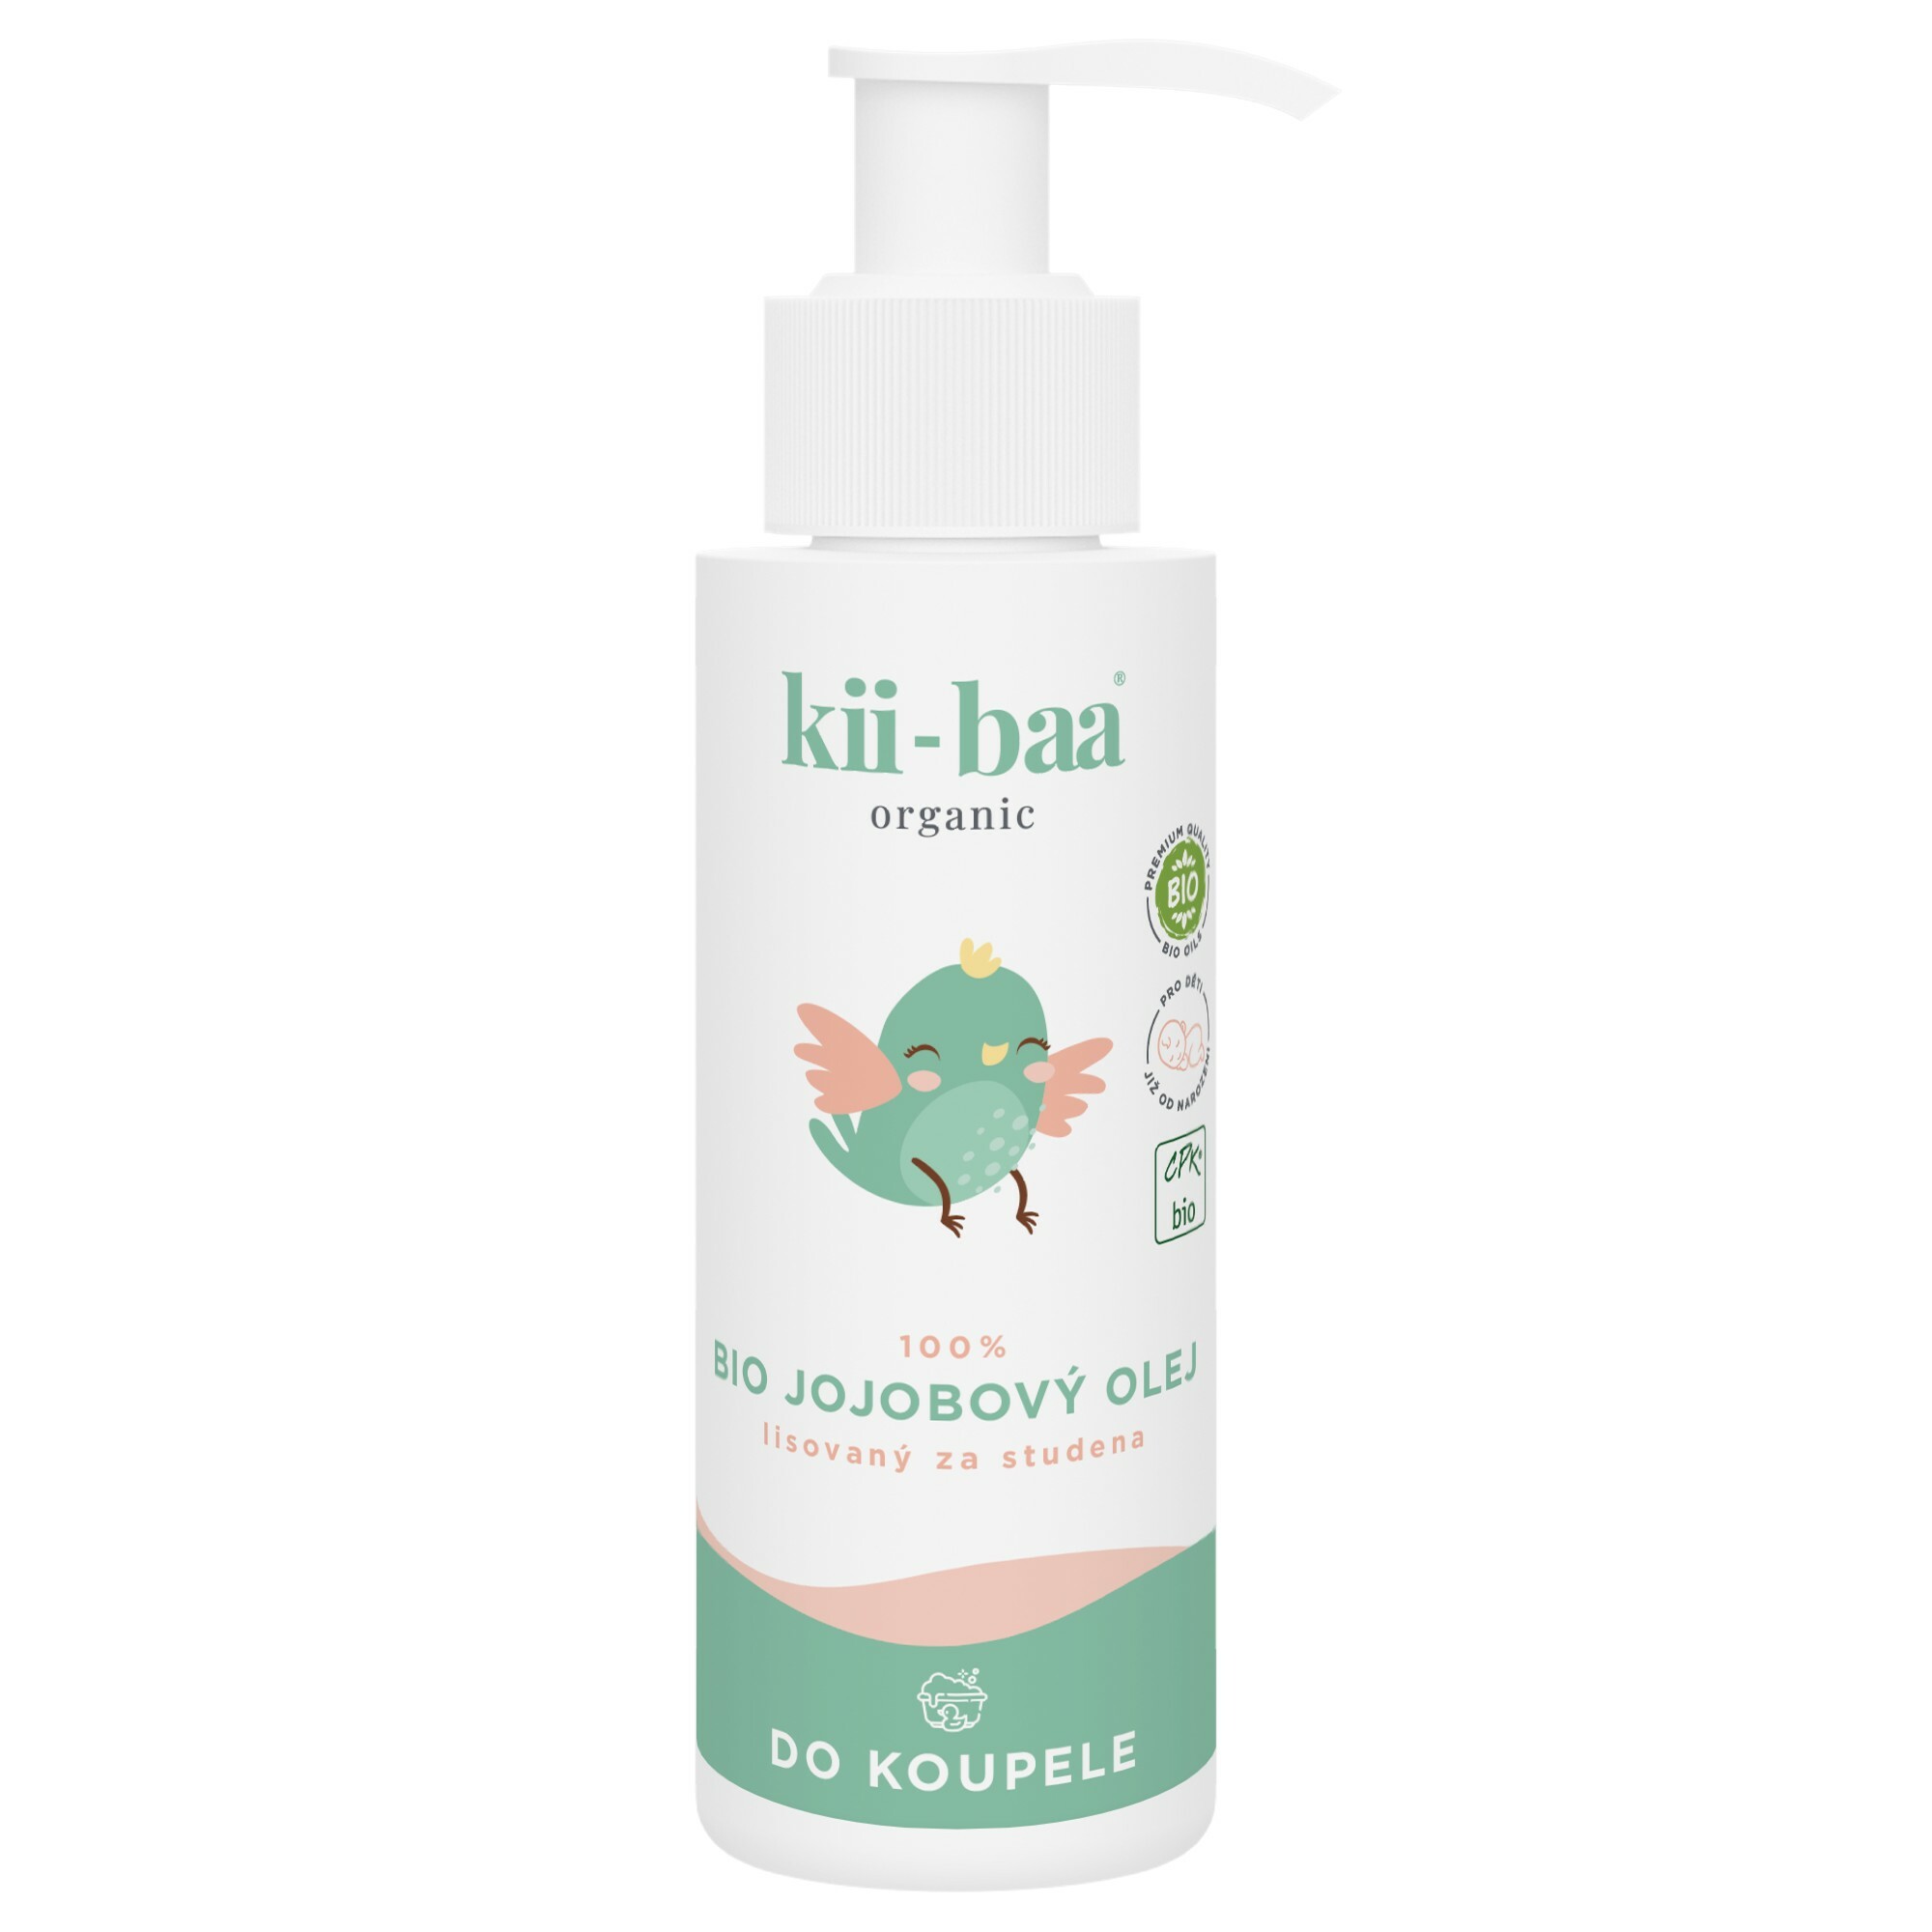 Zobrazit detail výrobku kii-baa organic Bio jojobový olej do koupele 100 ml